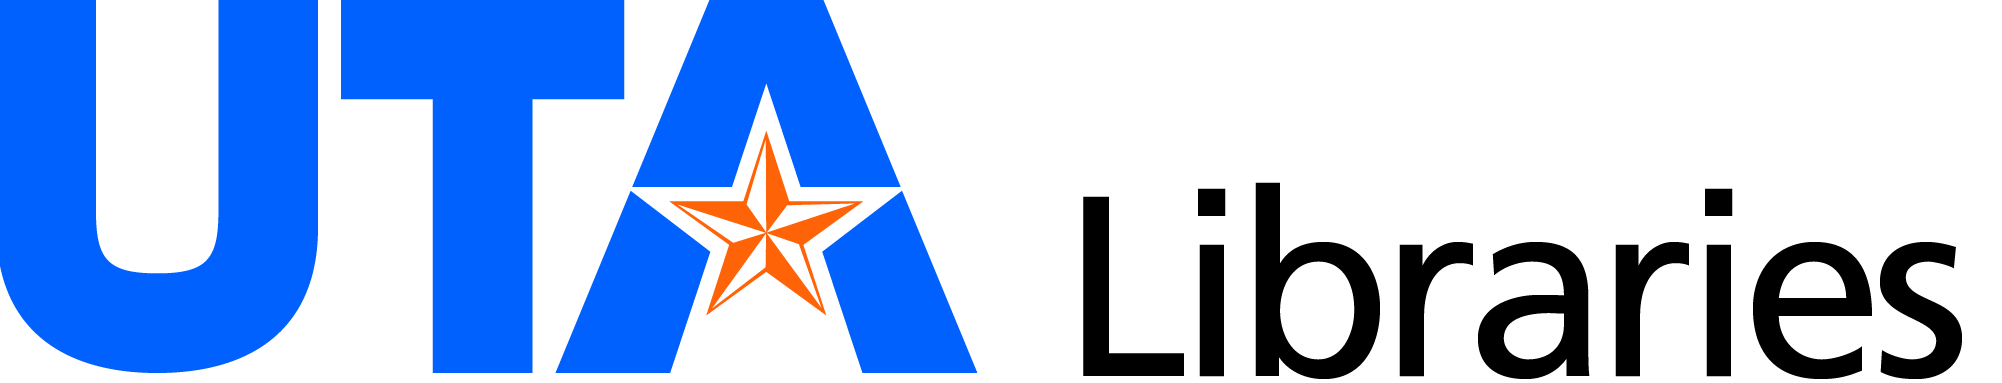 University of Texas at Arlington Libraries logo